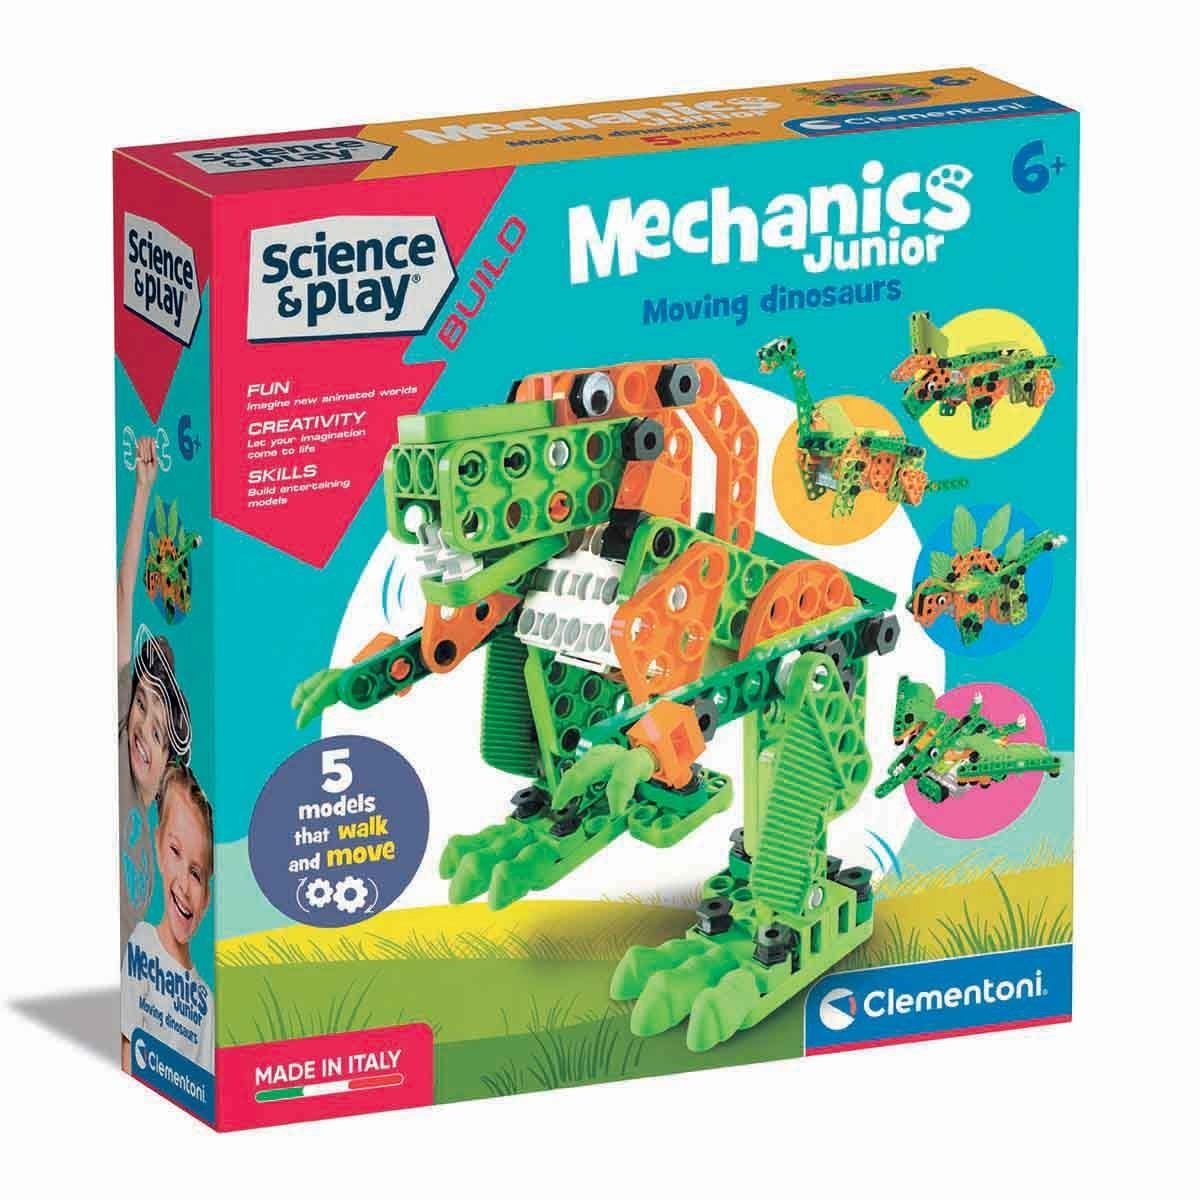 75061TR Hareketli Dinozorlar - Mechanics Junior, Mekanik Laboratuarı +6 yaş